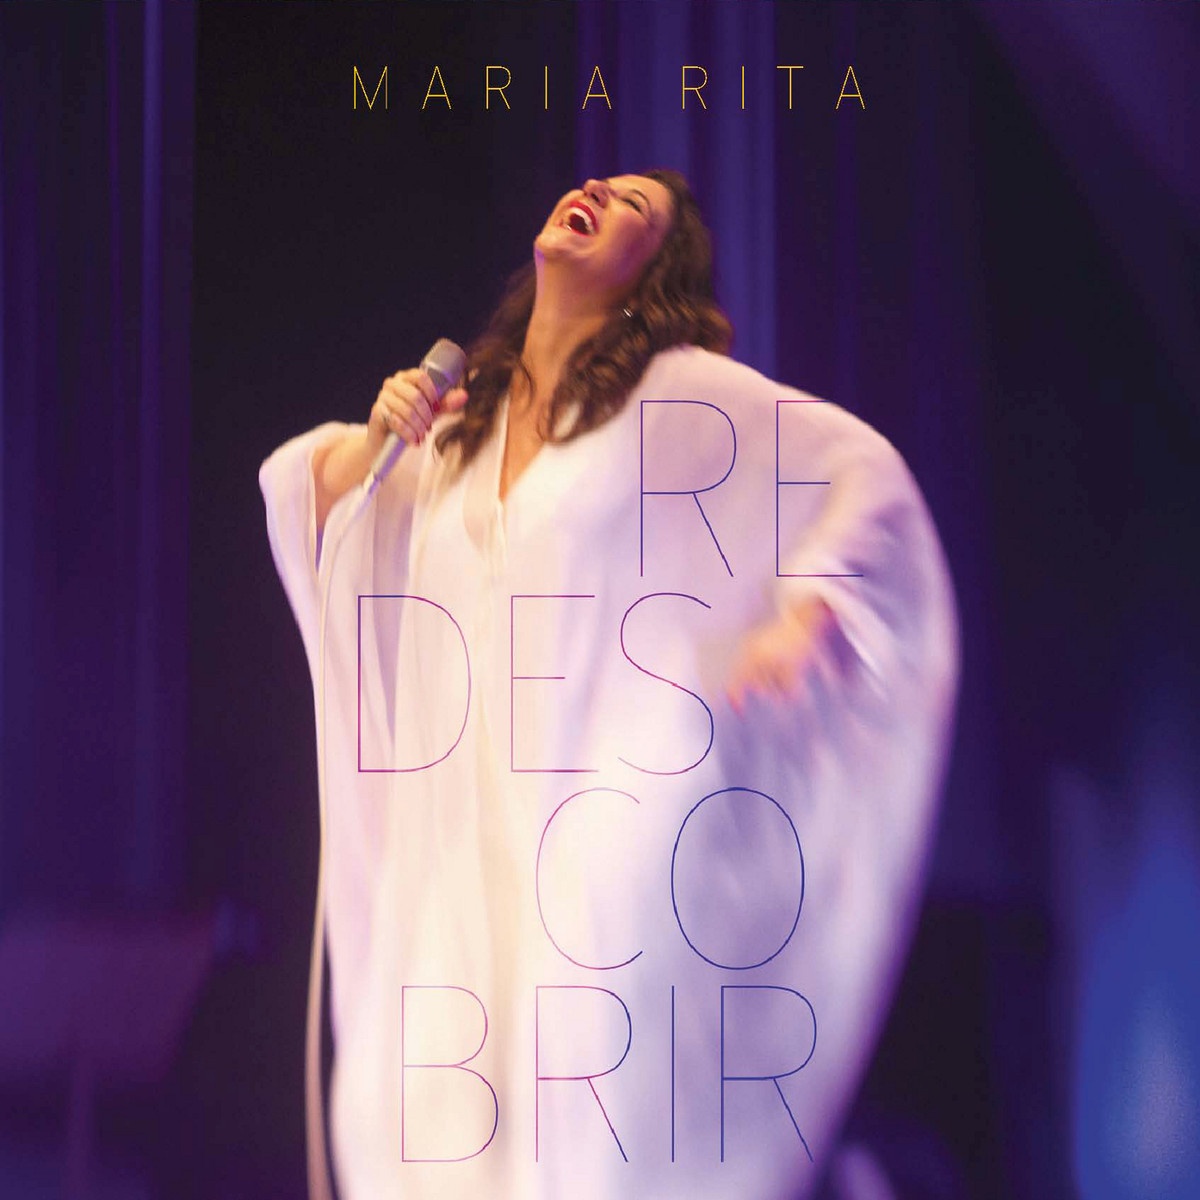 O Que Foi Feito Devera De Vera  Maria, Maria  Live At Credicard Hall, S o Paulo  2012  Medley